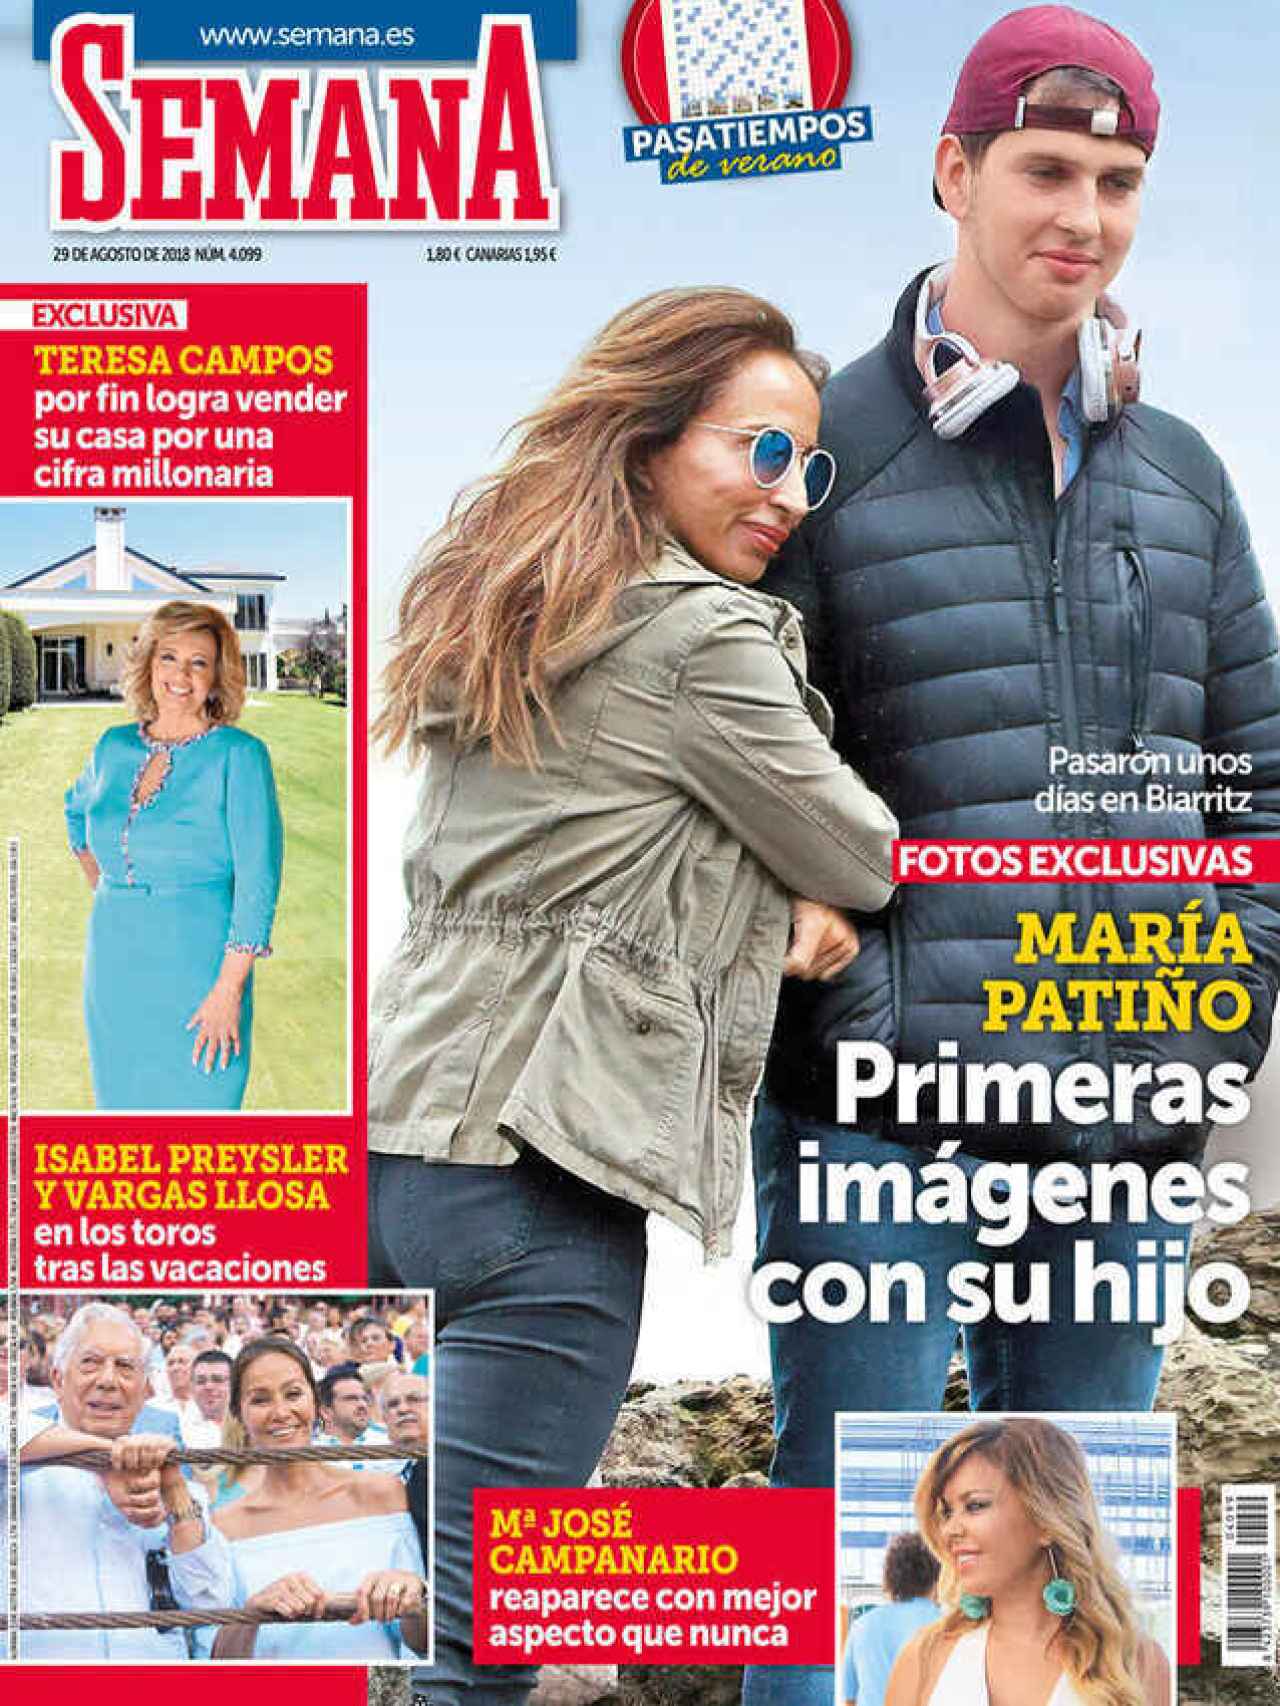 María Patiño junto a su hijo, Julio, en la portada de 'Semana'.